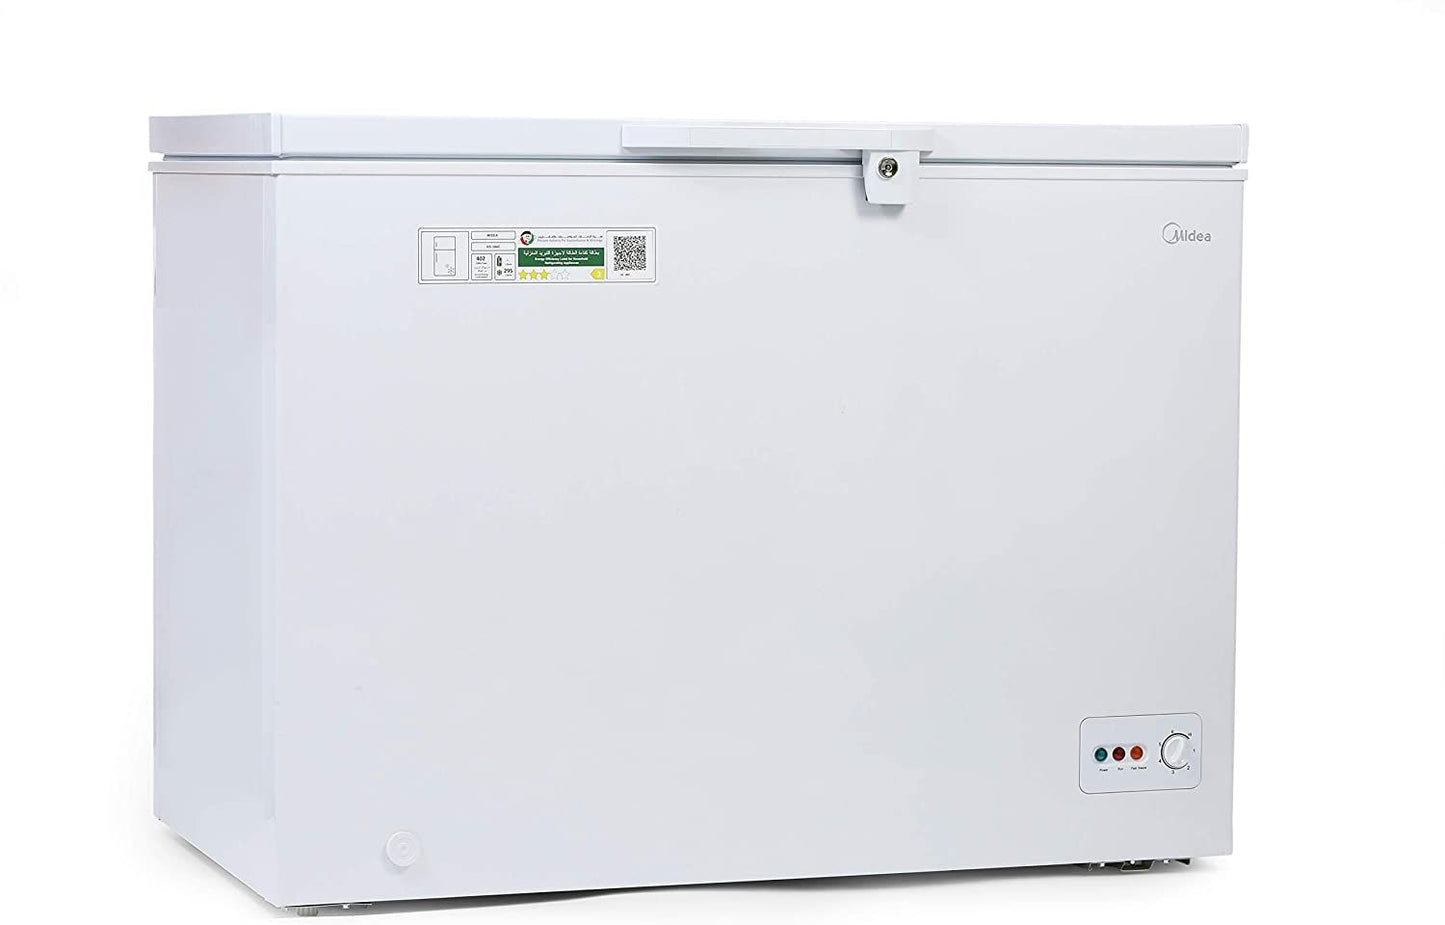 Midea HS-384CN Chest Freezer White Color 295 Ltr Gross Capacity